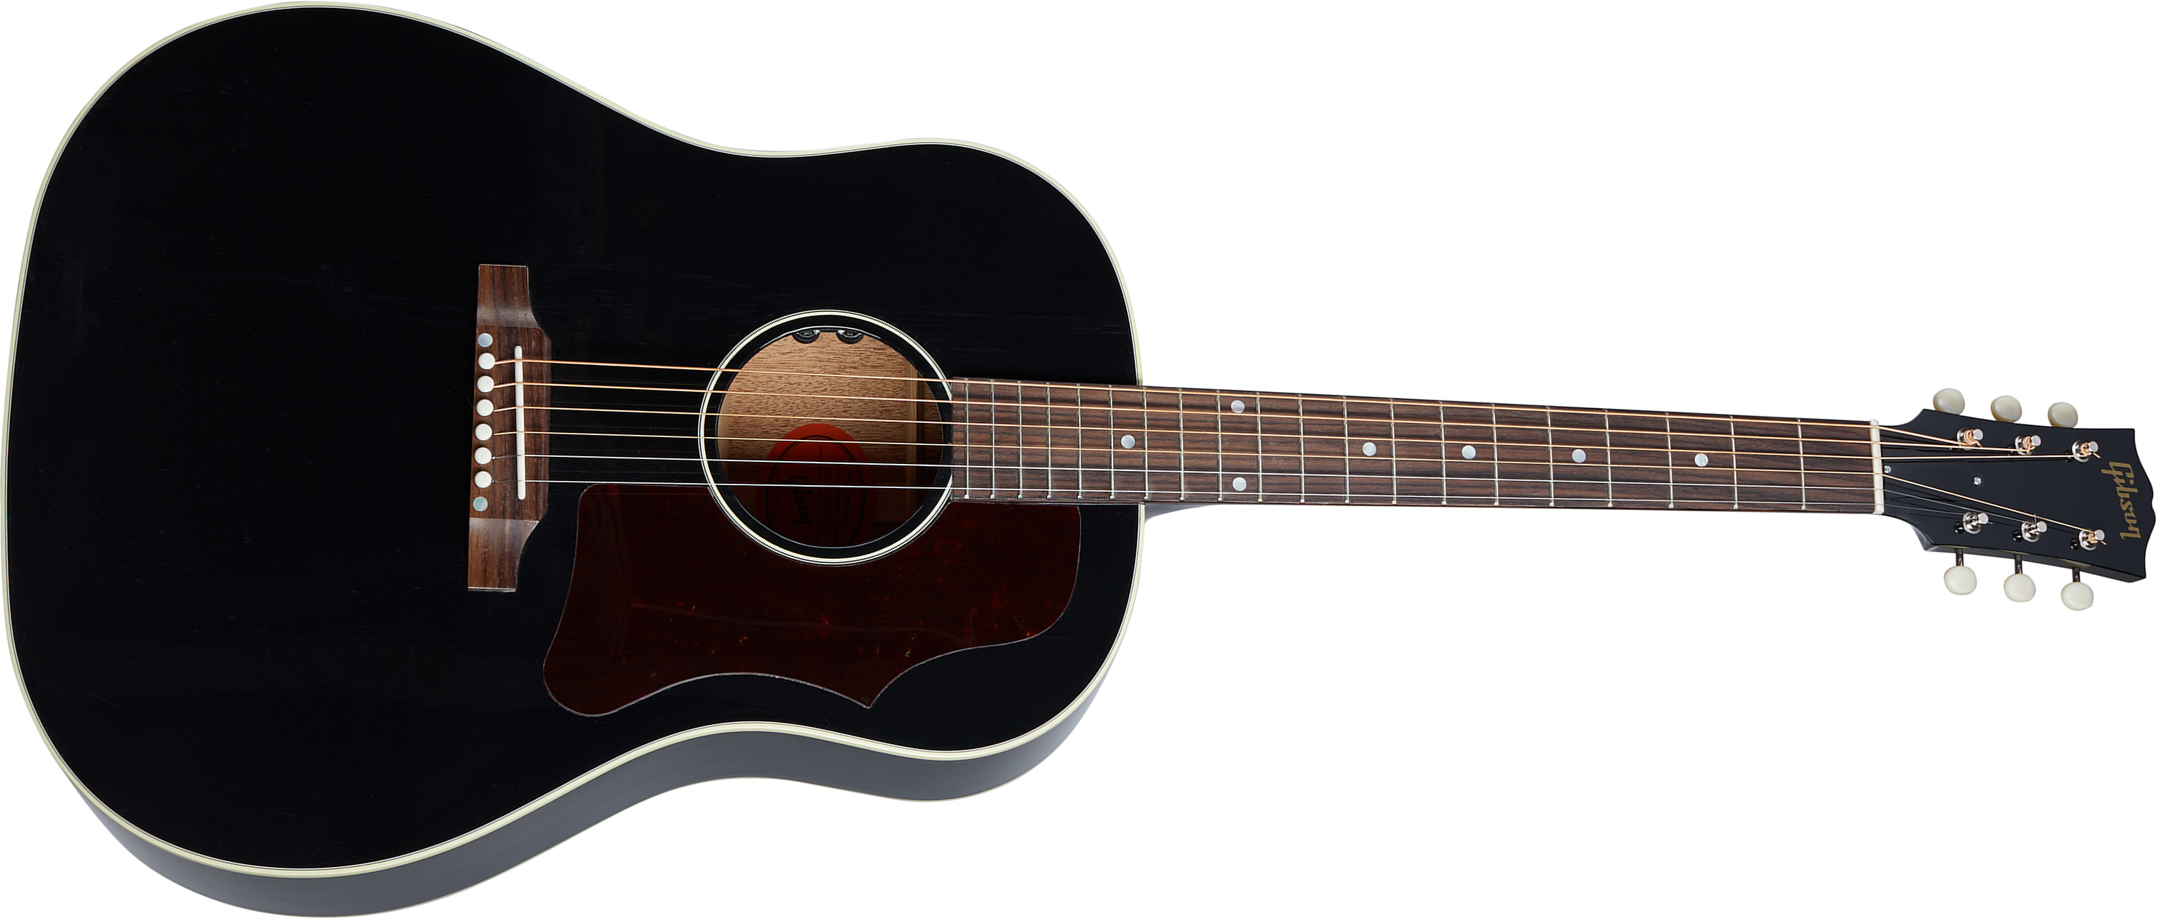 Gibson 50s J-45 Original 2020 Epicea Acajou Rw - Ebony - Elektroakustische Gitarre - Main picture